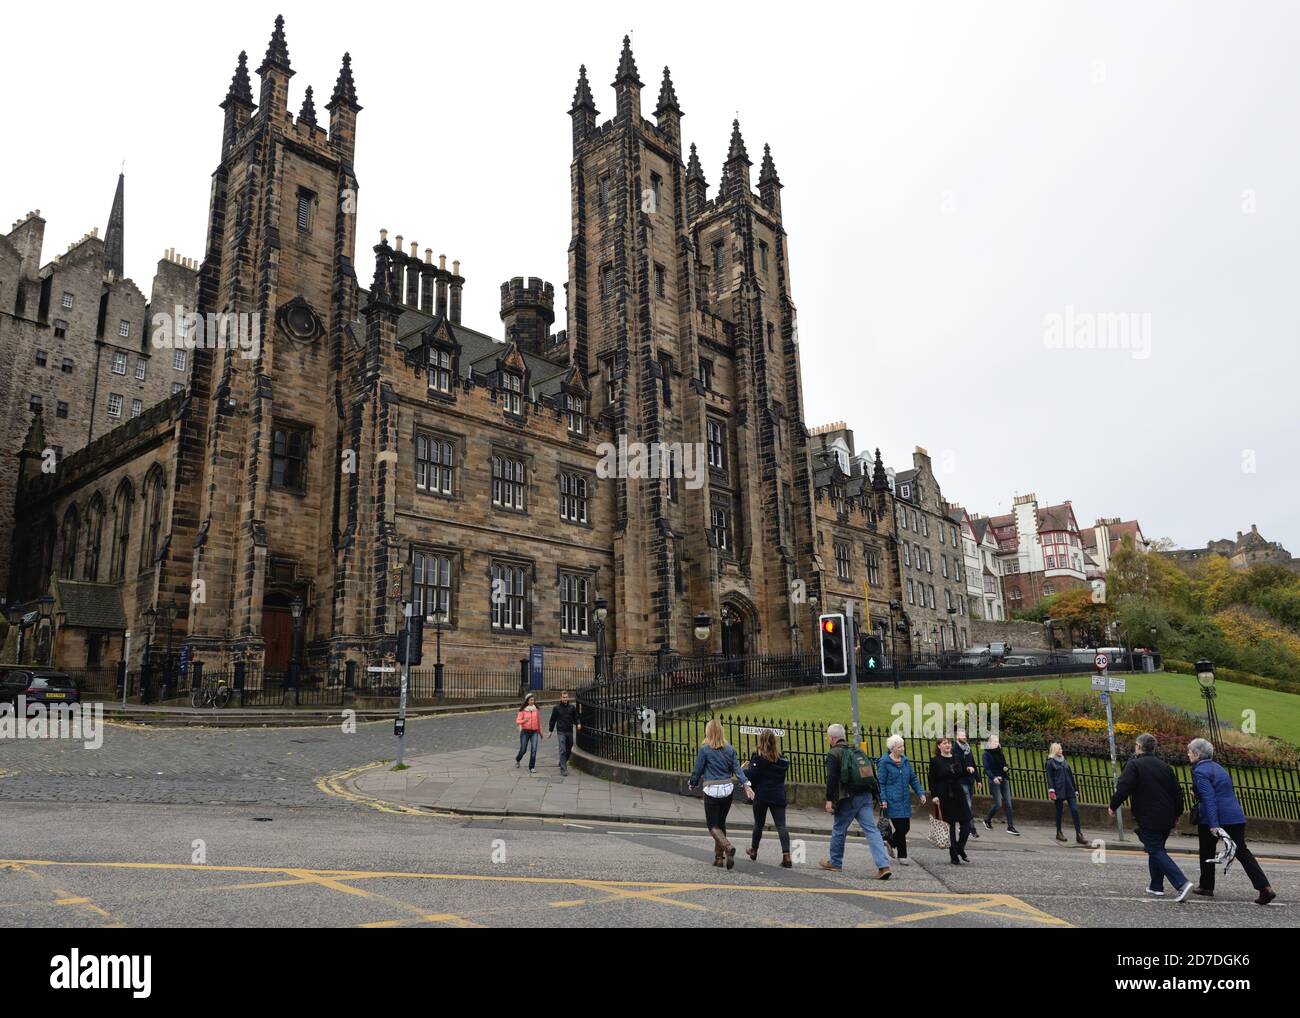 Les gens qui marchent sur la colline à New College, l'Université d'Édimbourg sur la Mound, Écosse, Royaume-Uni Banque D'Images